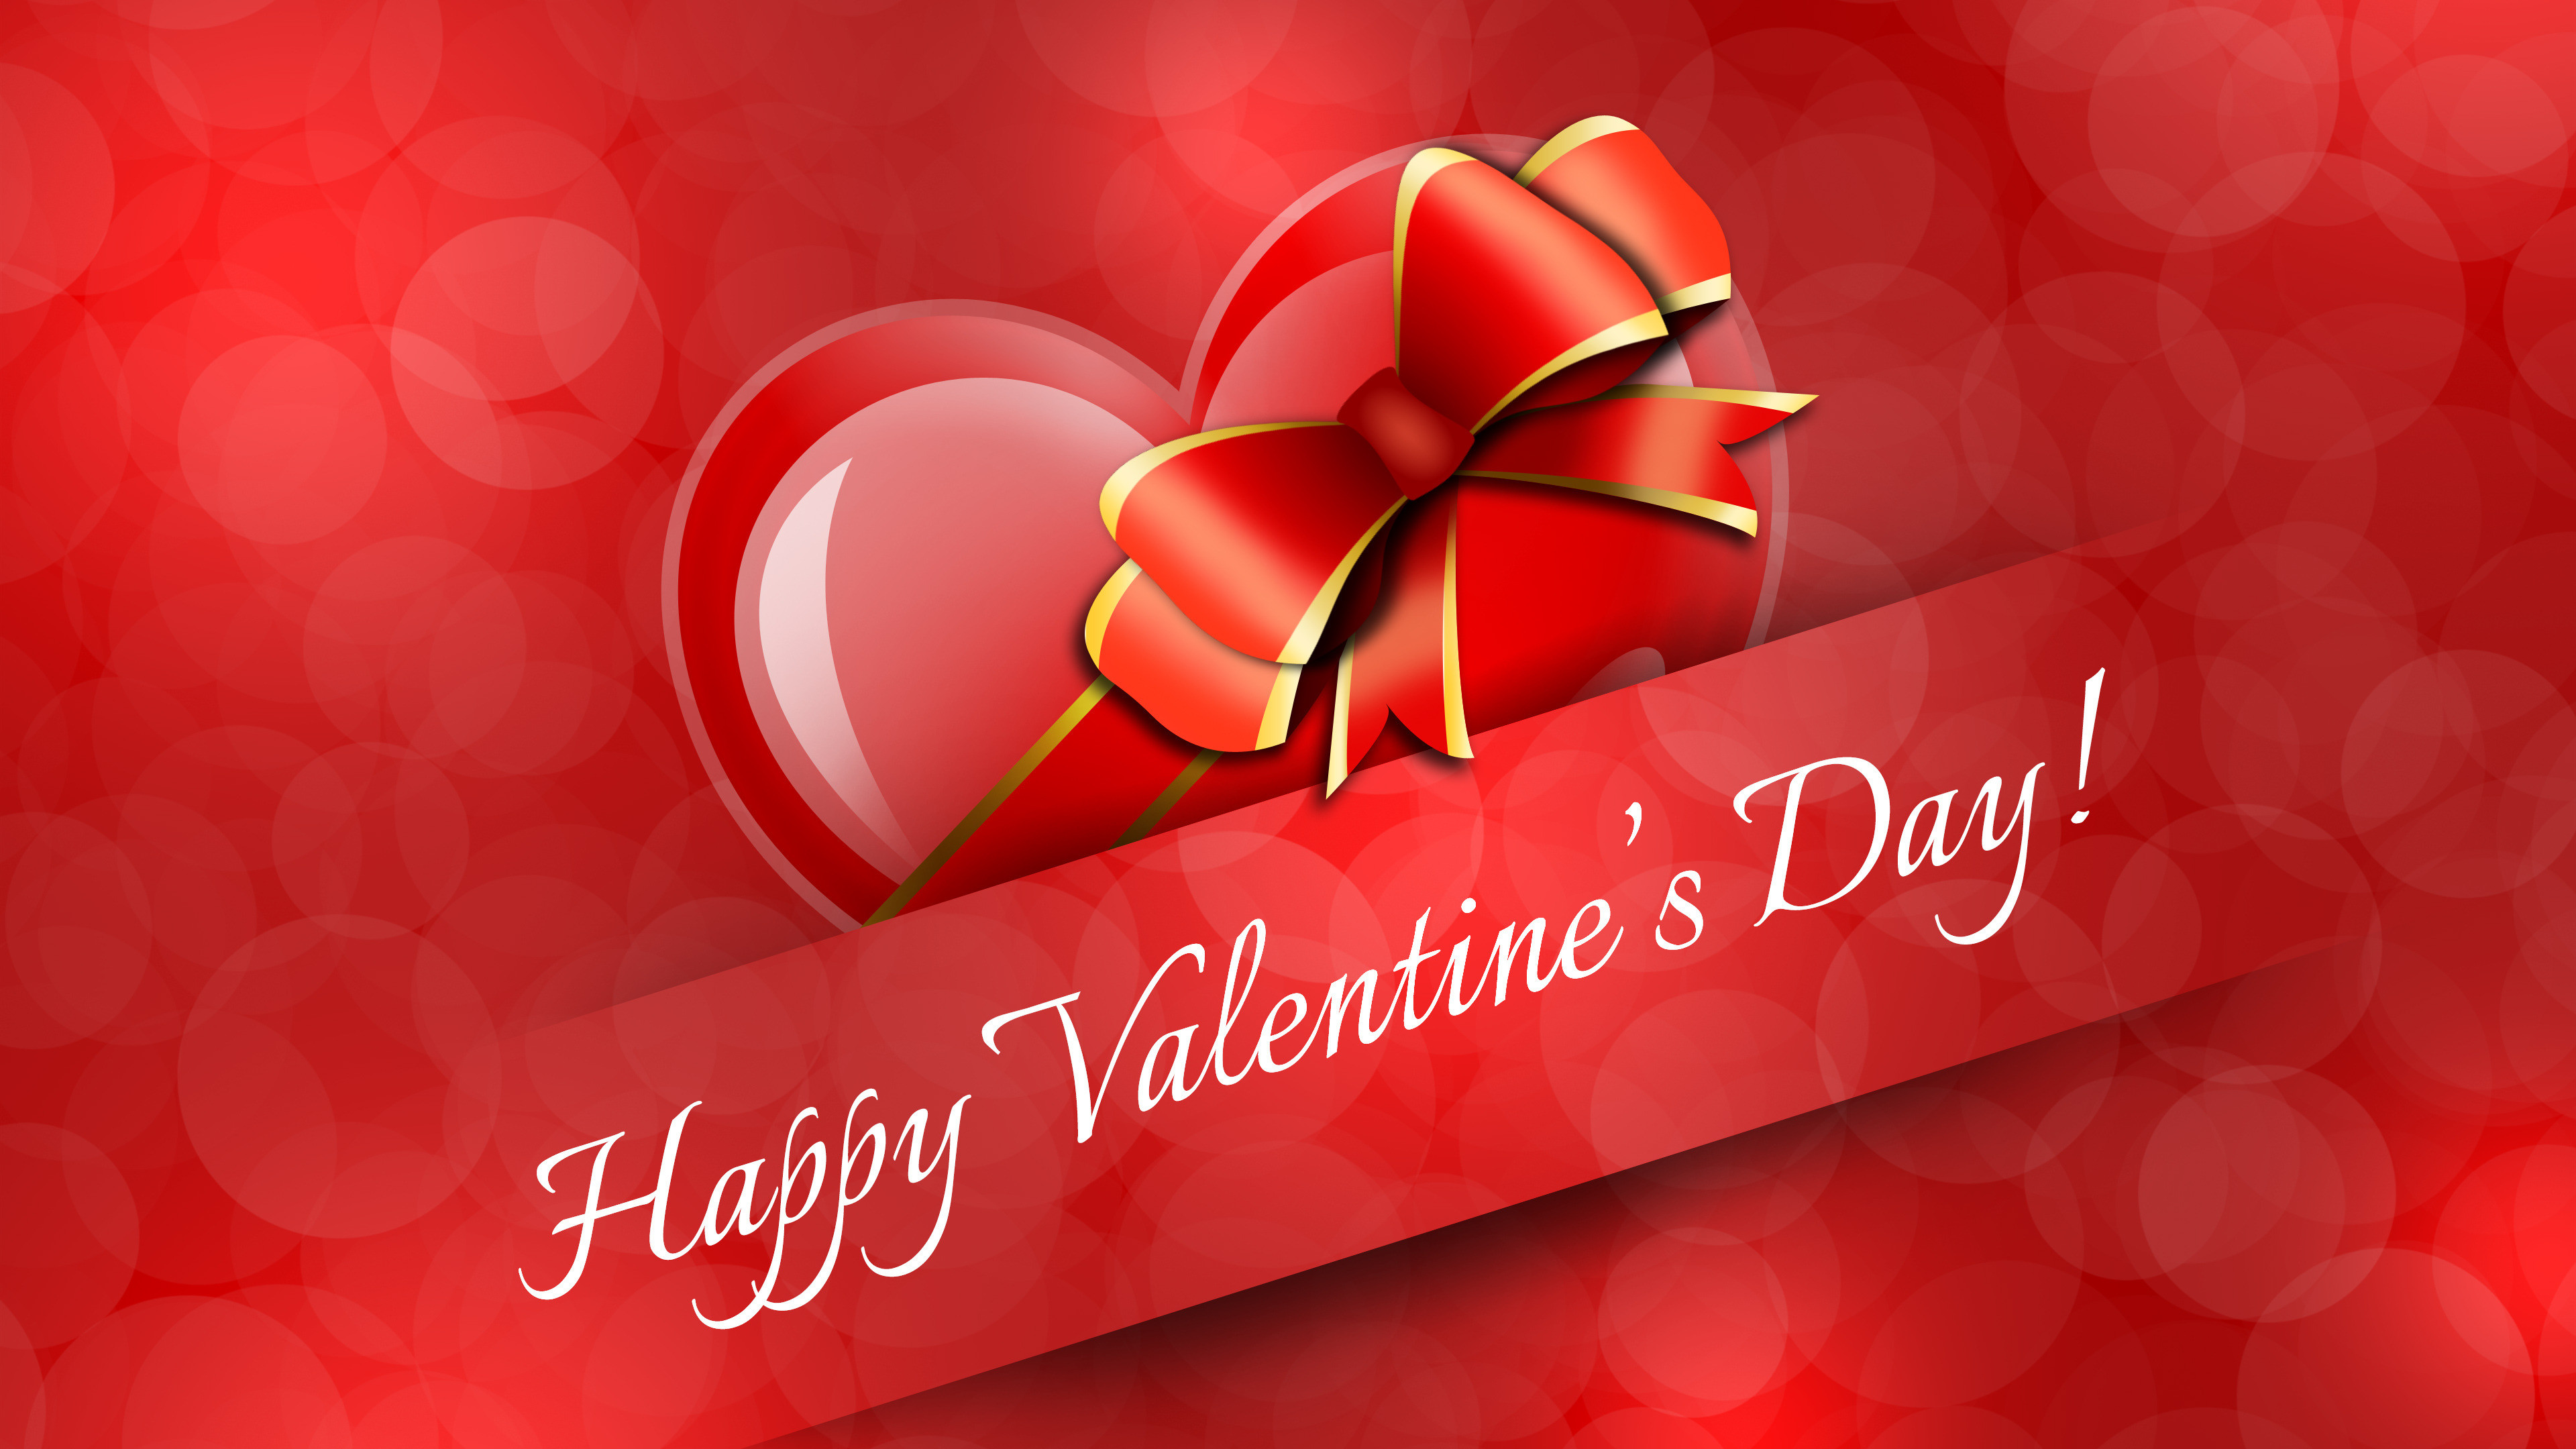 3840x2160 Happy Valentines Day Image